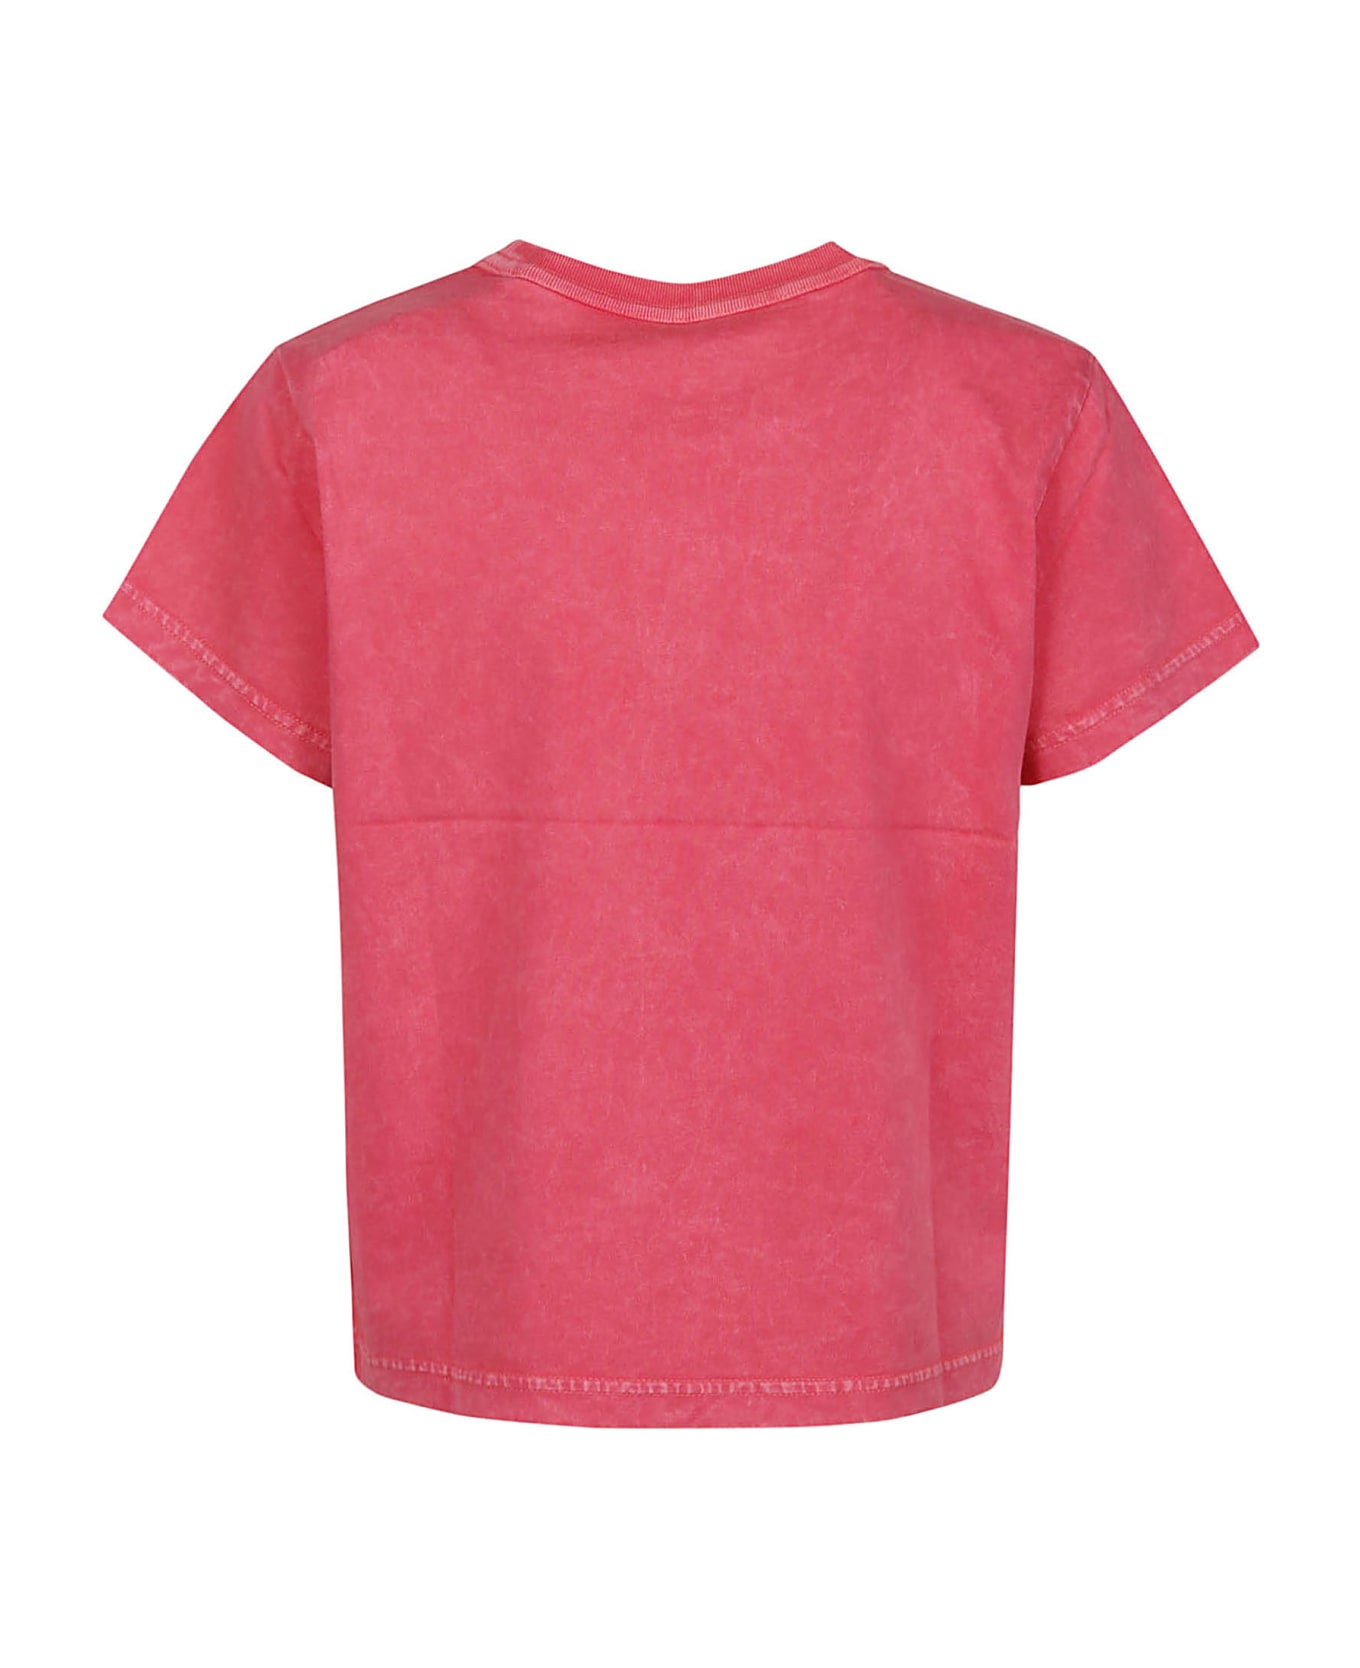 T by Alexander Wang Puff Logo Bound Neck Essential Shrunk T-shirt - A Soft Cherry